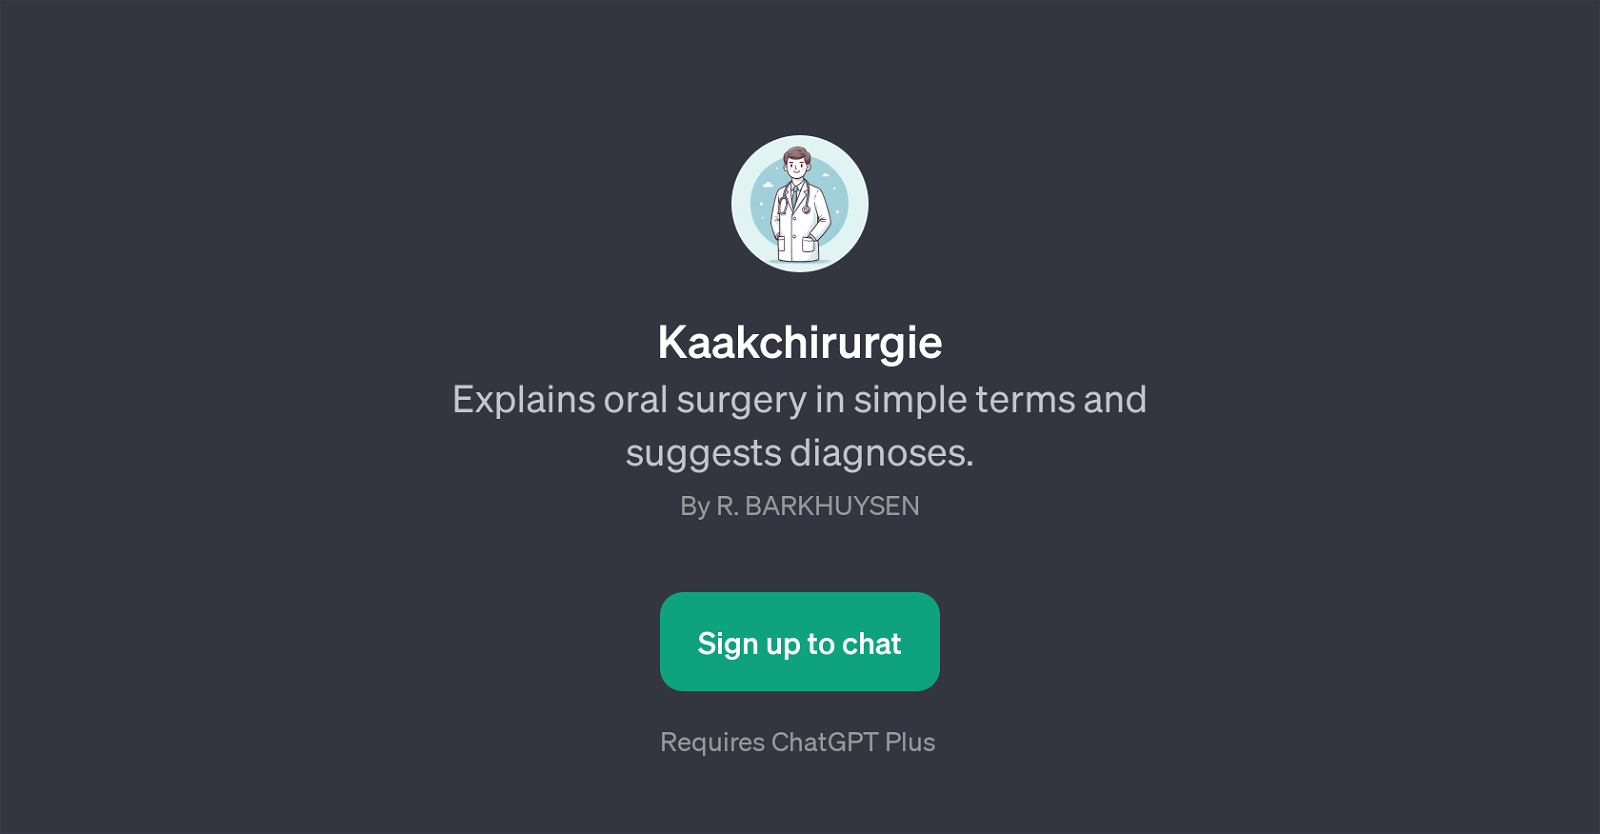 Kaakchirurgie website